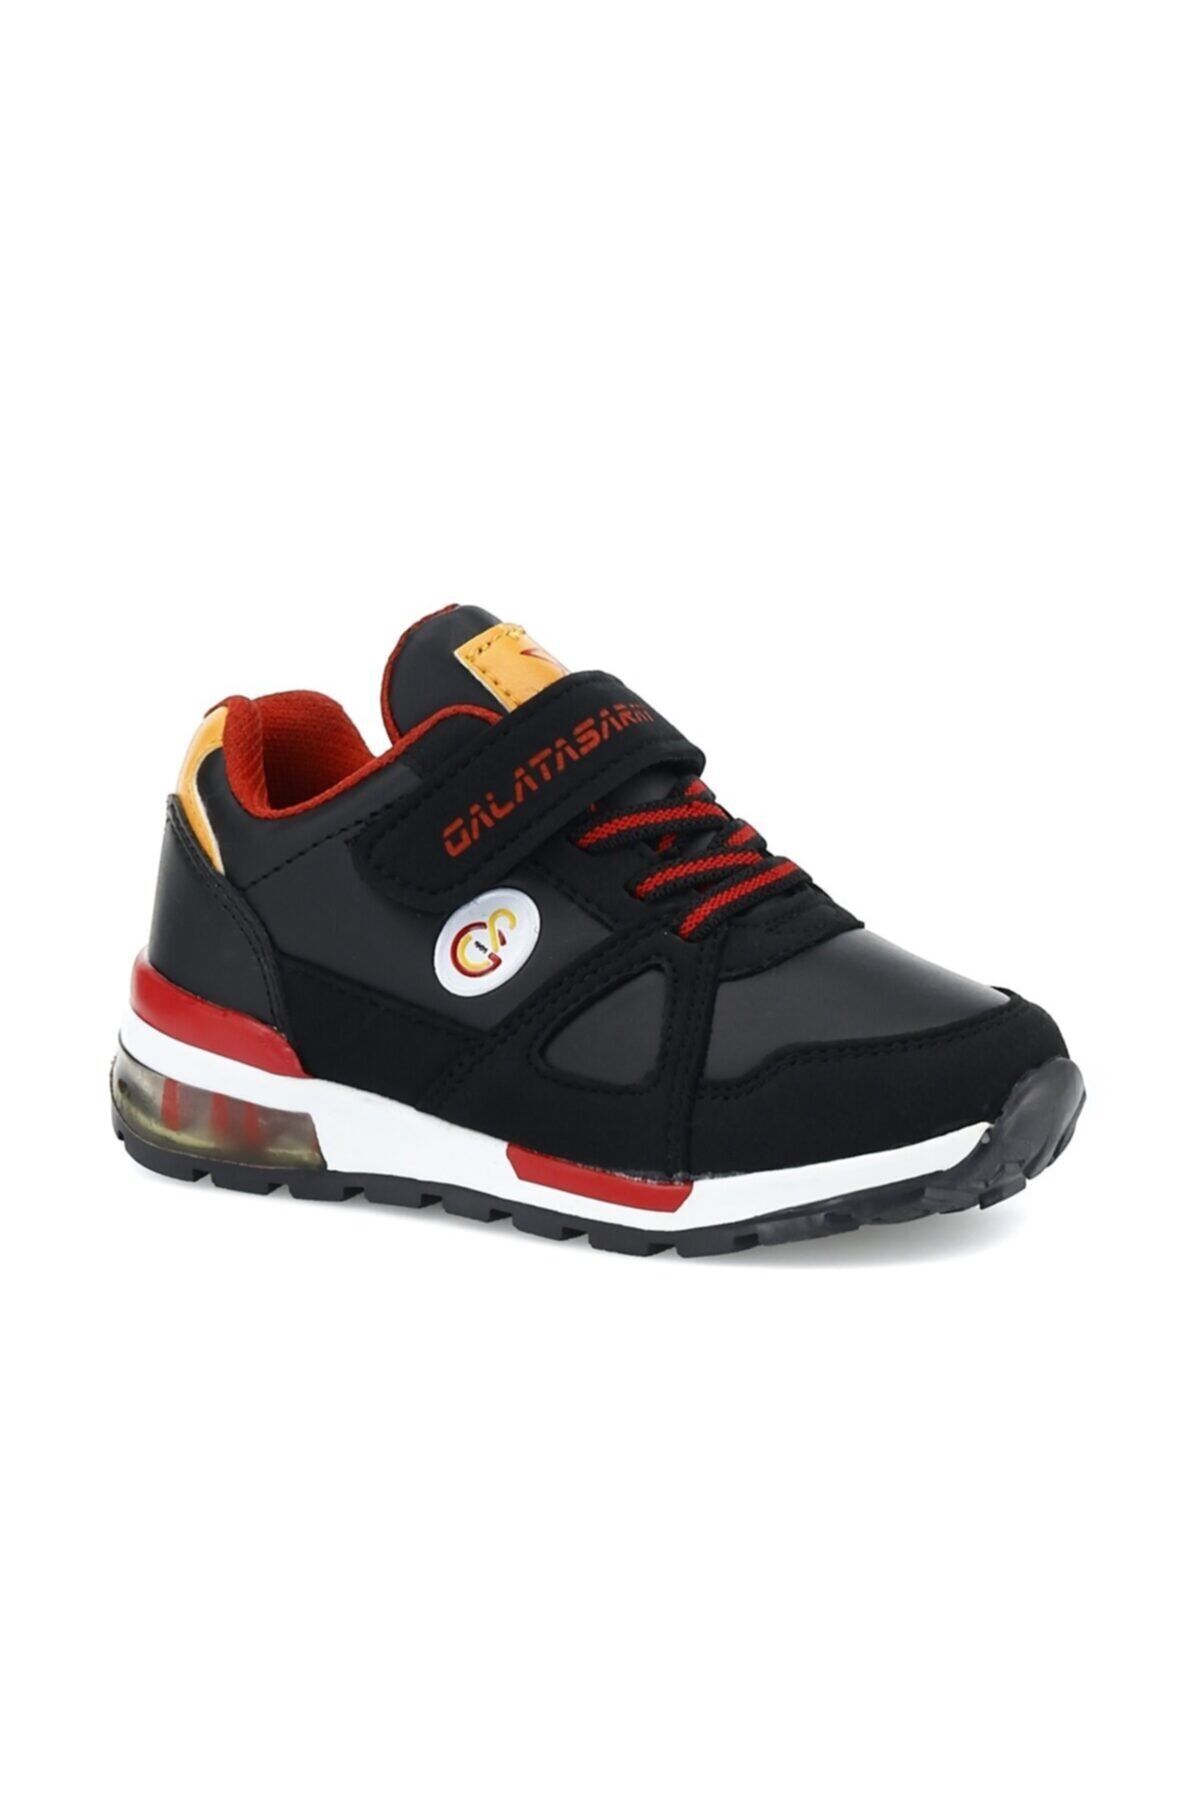 Galatasaray Rıvero Pu 1pr Siyah Erkek Çocuk Yürüyüş Ayakkabısı